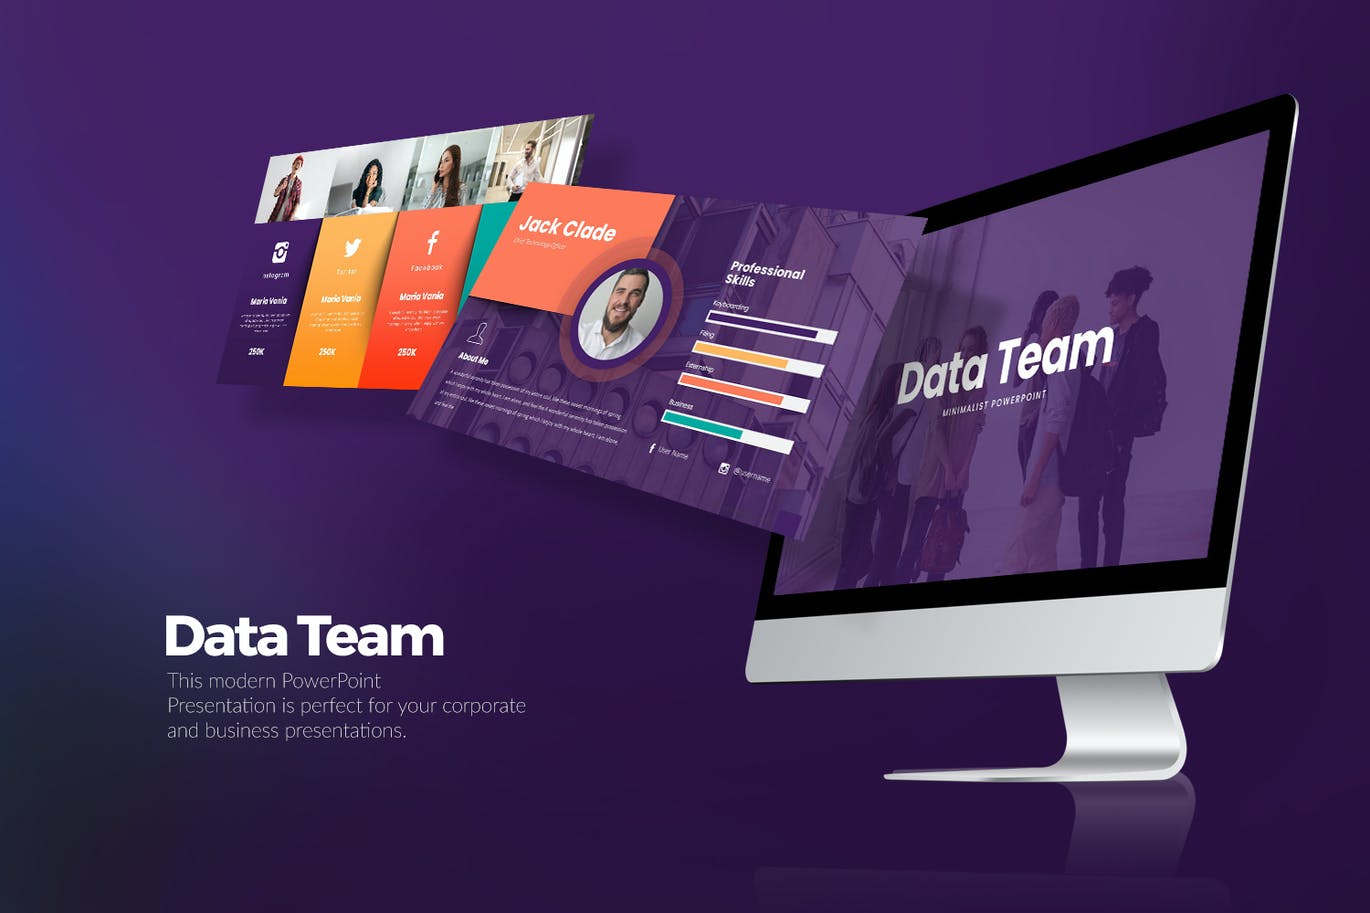 数据团队PPT幻灯片模板下载 Data Team PowerPoint Presentation 幻灯图表 第1张